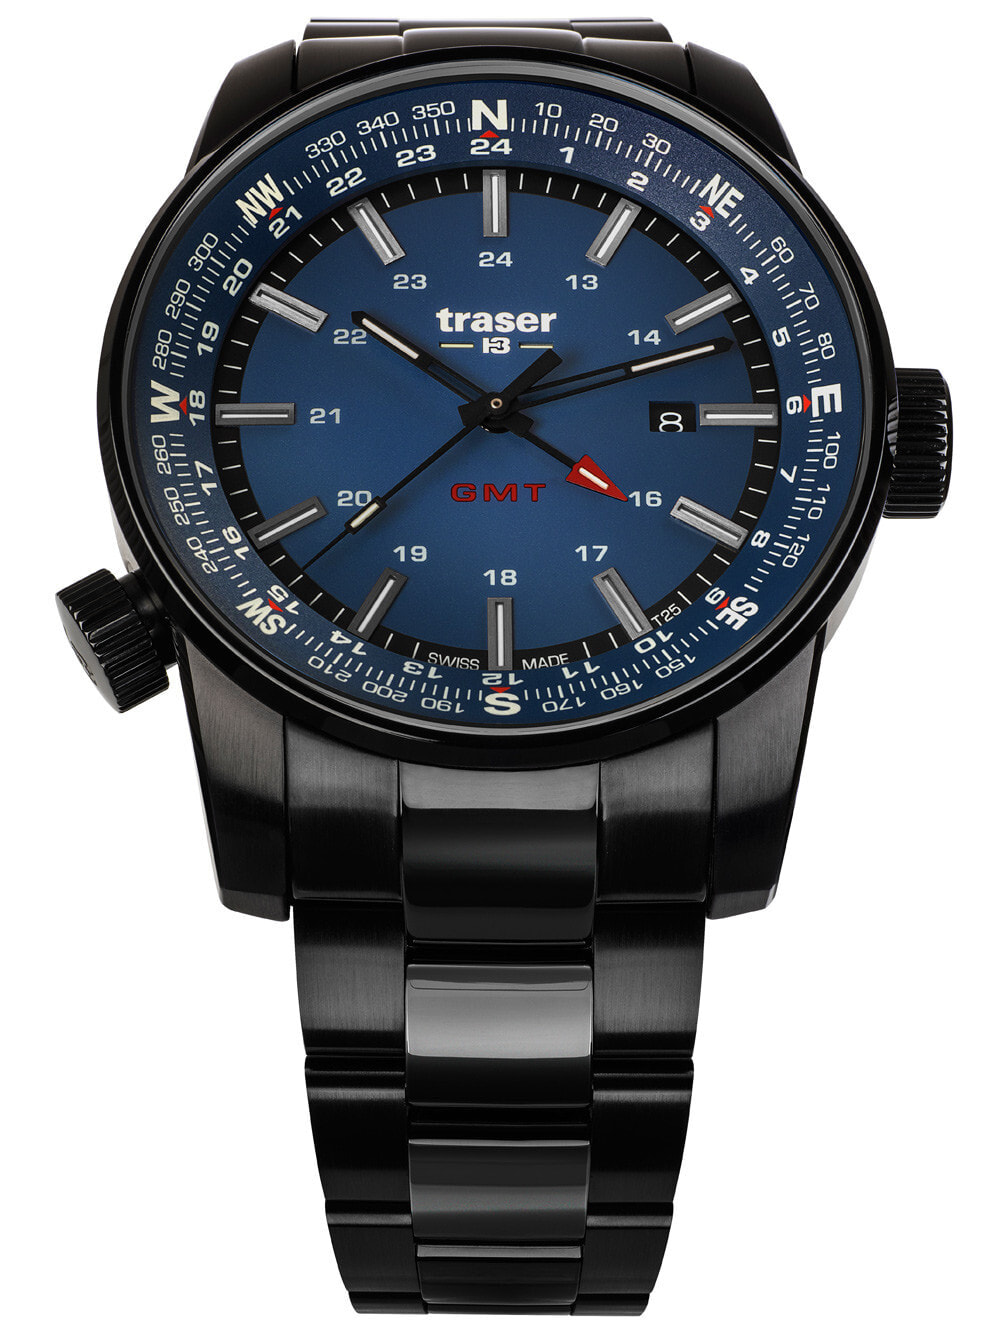 Мужские наручные часы с черным браслетом Traser H3 109524 P68 Pathfinder GMT 46mm 10ATM